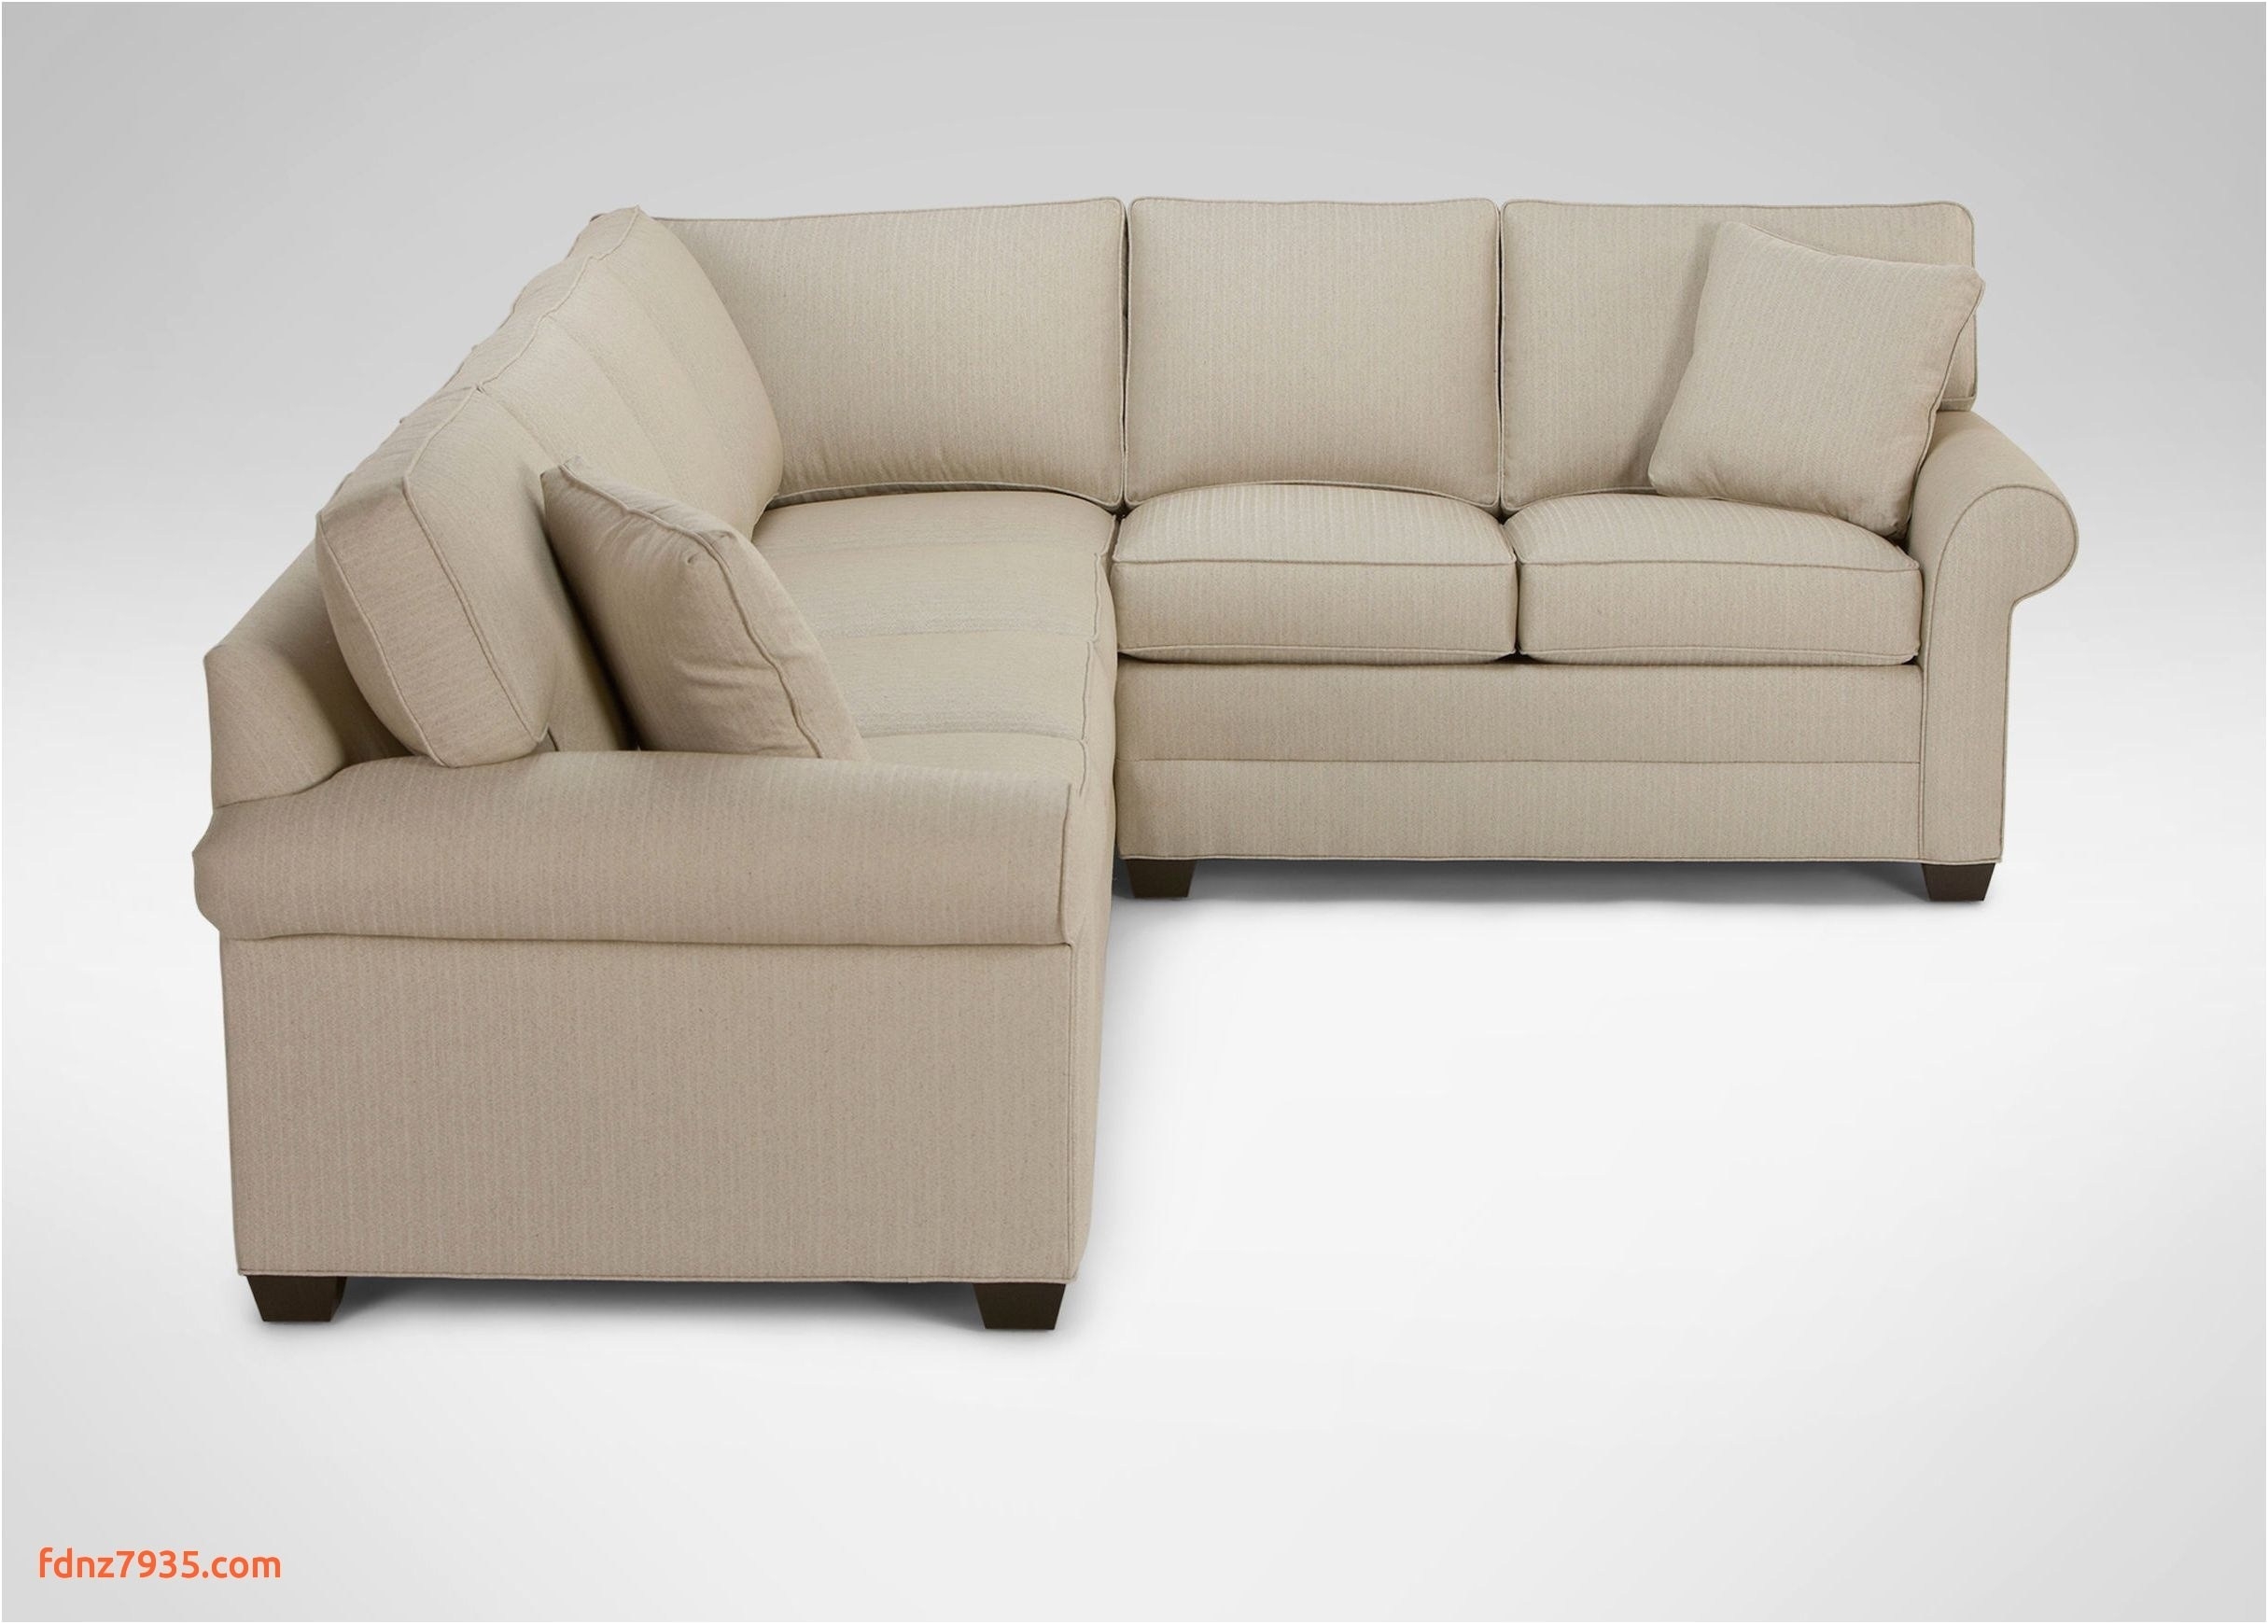 Ethan Allen Sleeper sofa with Air Mattress Charming Ethan Allen Sleeper sofa – Fresh sofa Design